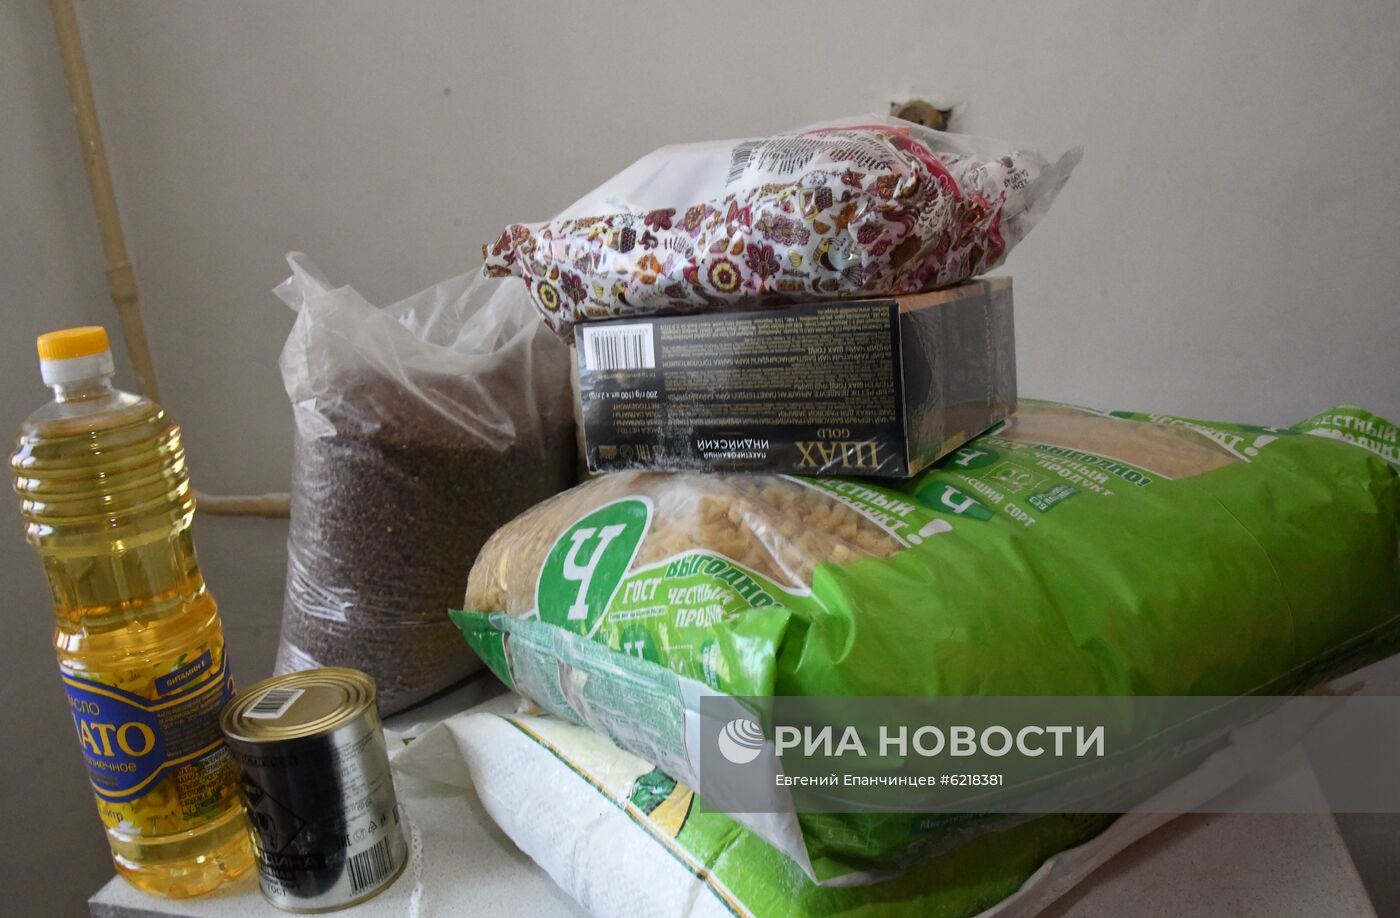 Нуждающиеся семьи Забайкалья получили продуктовые наборы  от Фонда Ахмата Кадырова